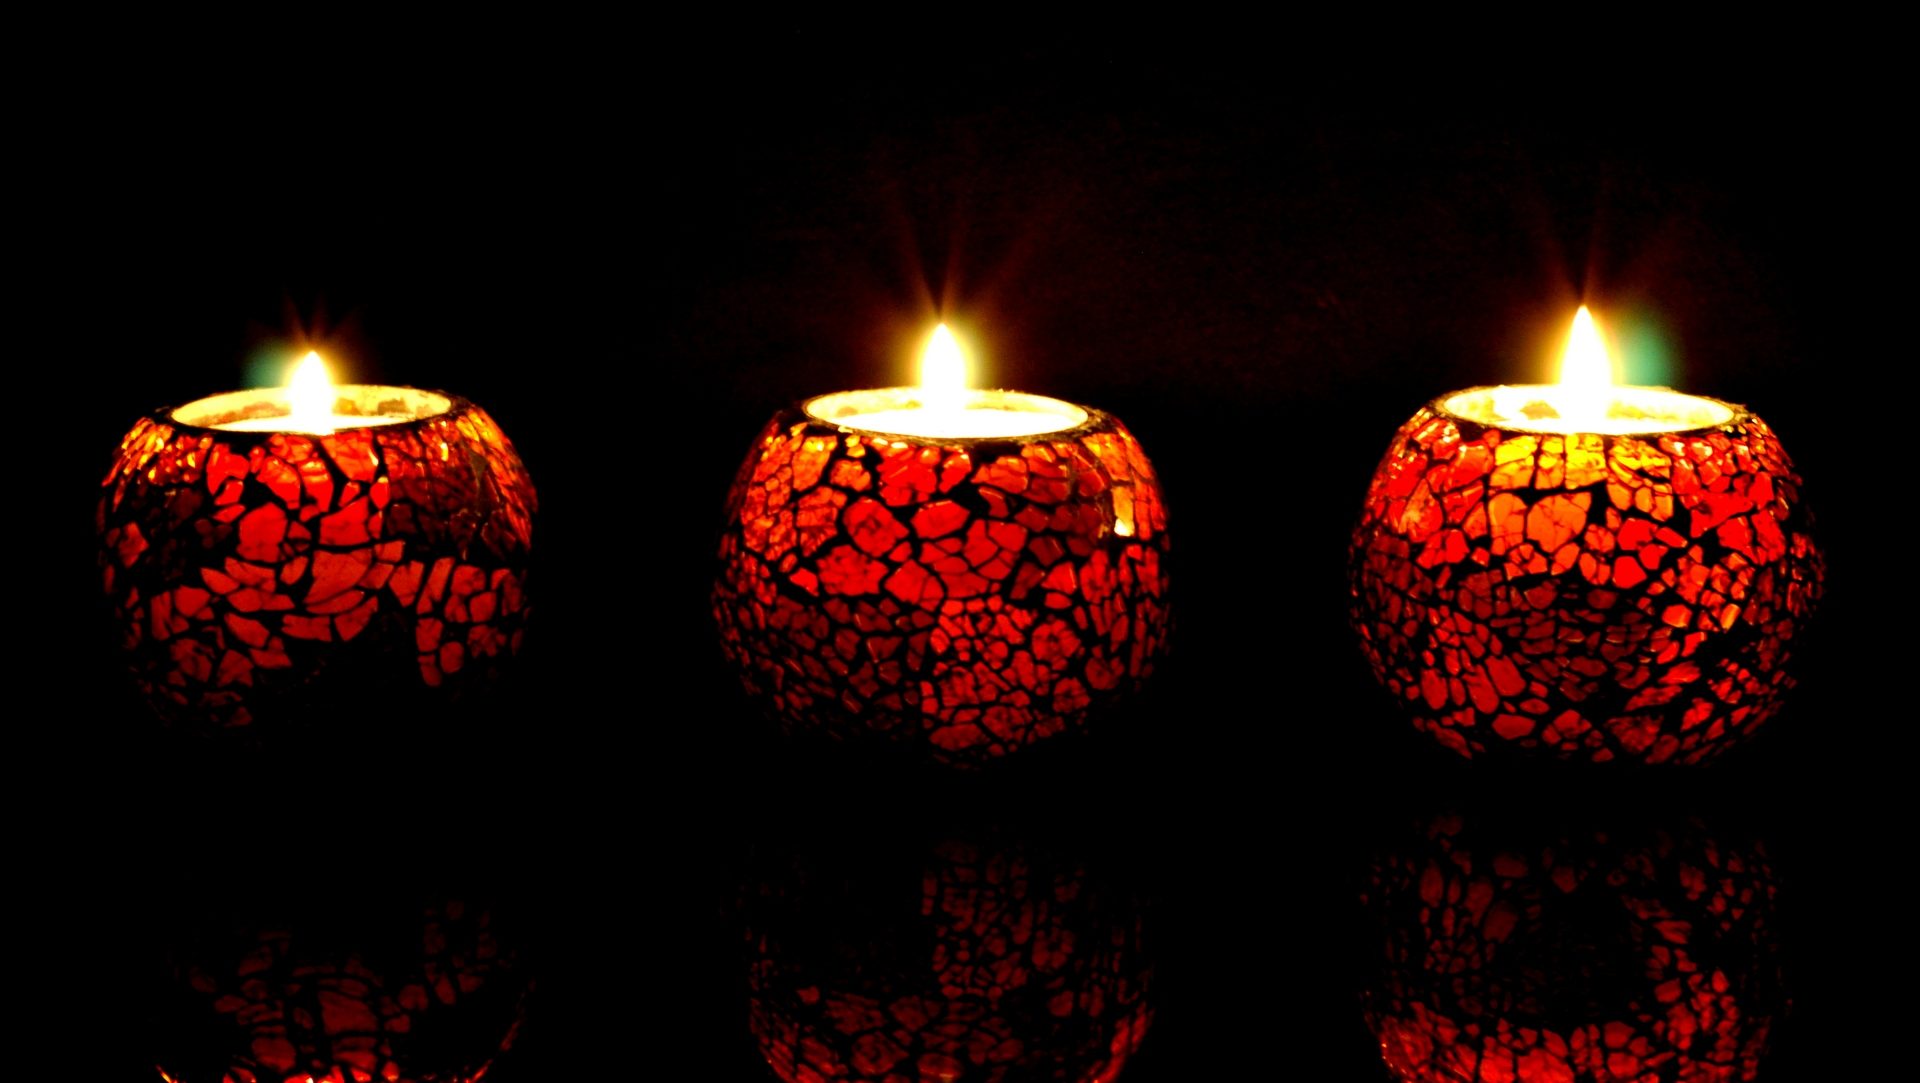 lumières de la fête hindoue de Divali (photo wikimedia commons  	peddhapati CC BY 2.0)